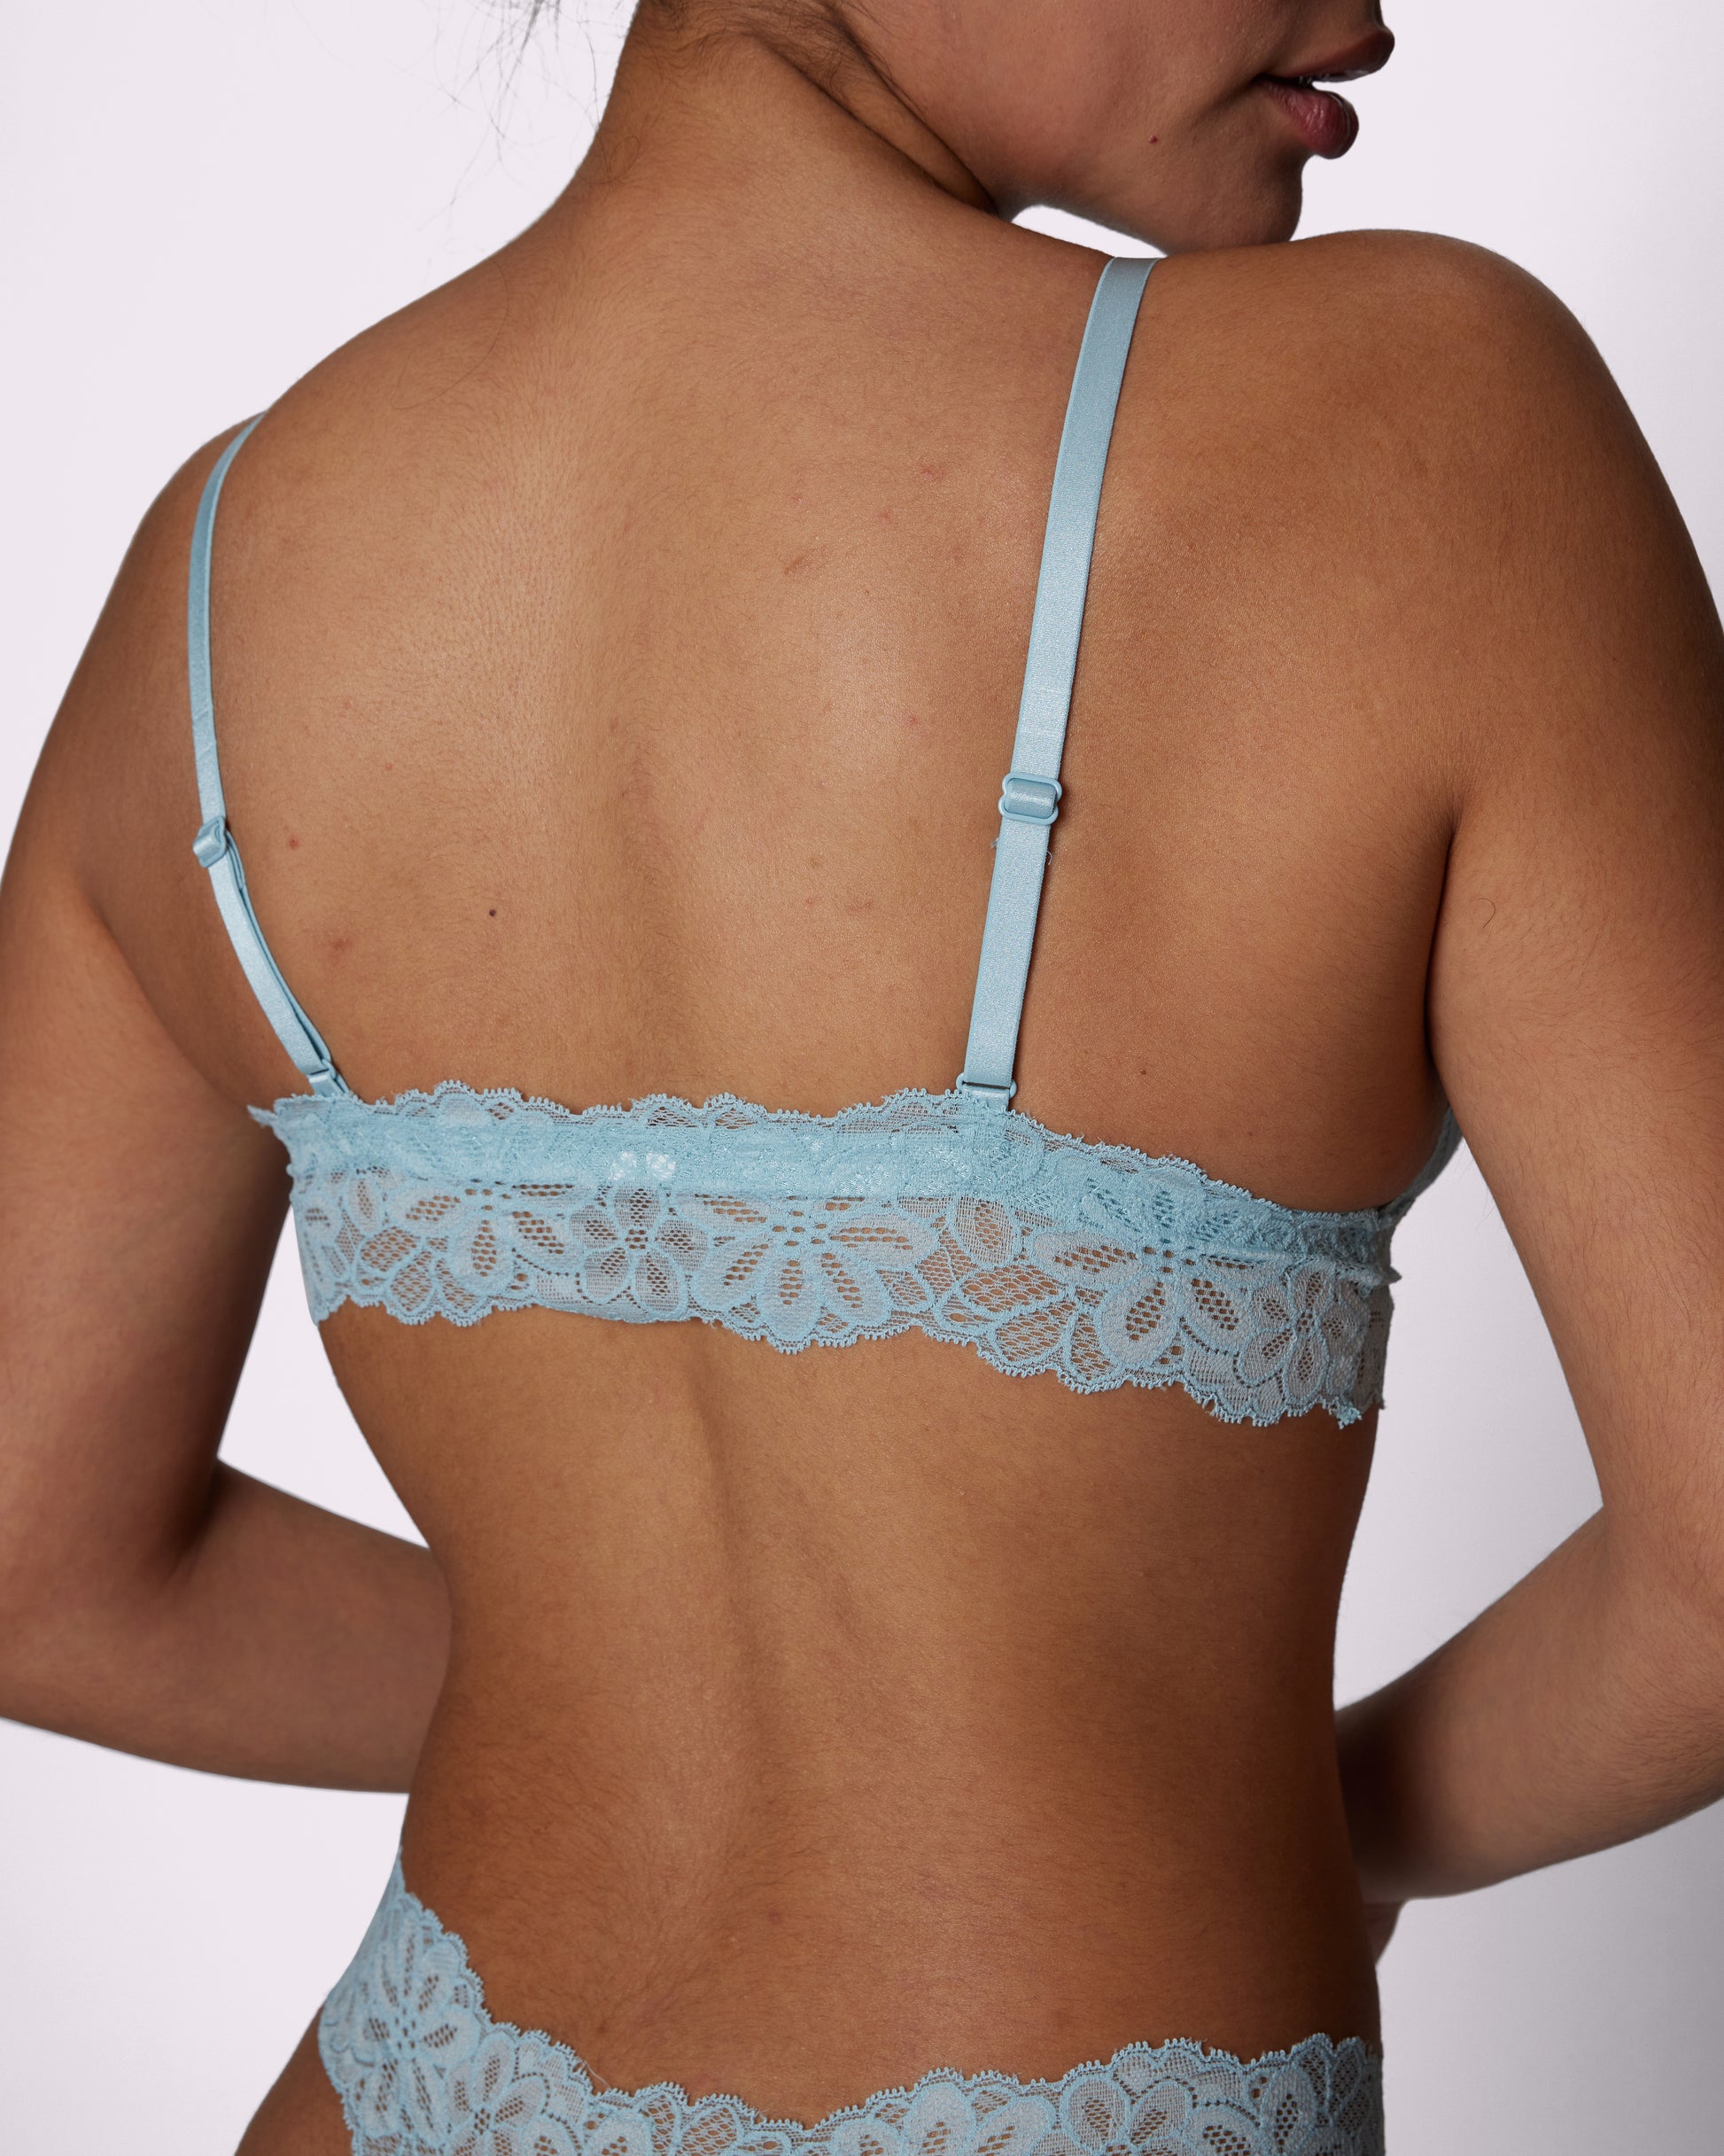 Lace Bralette Briefs Soft Triangle Bra Panty Sets